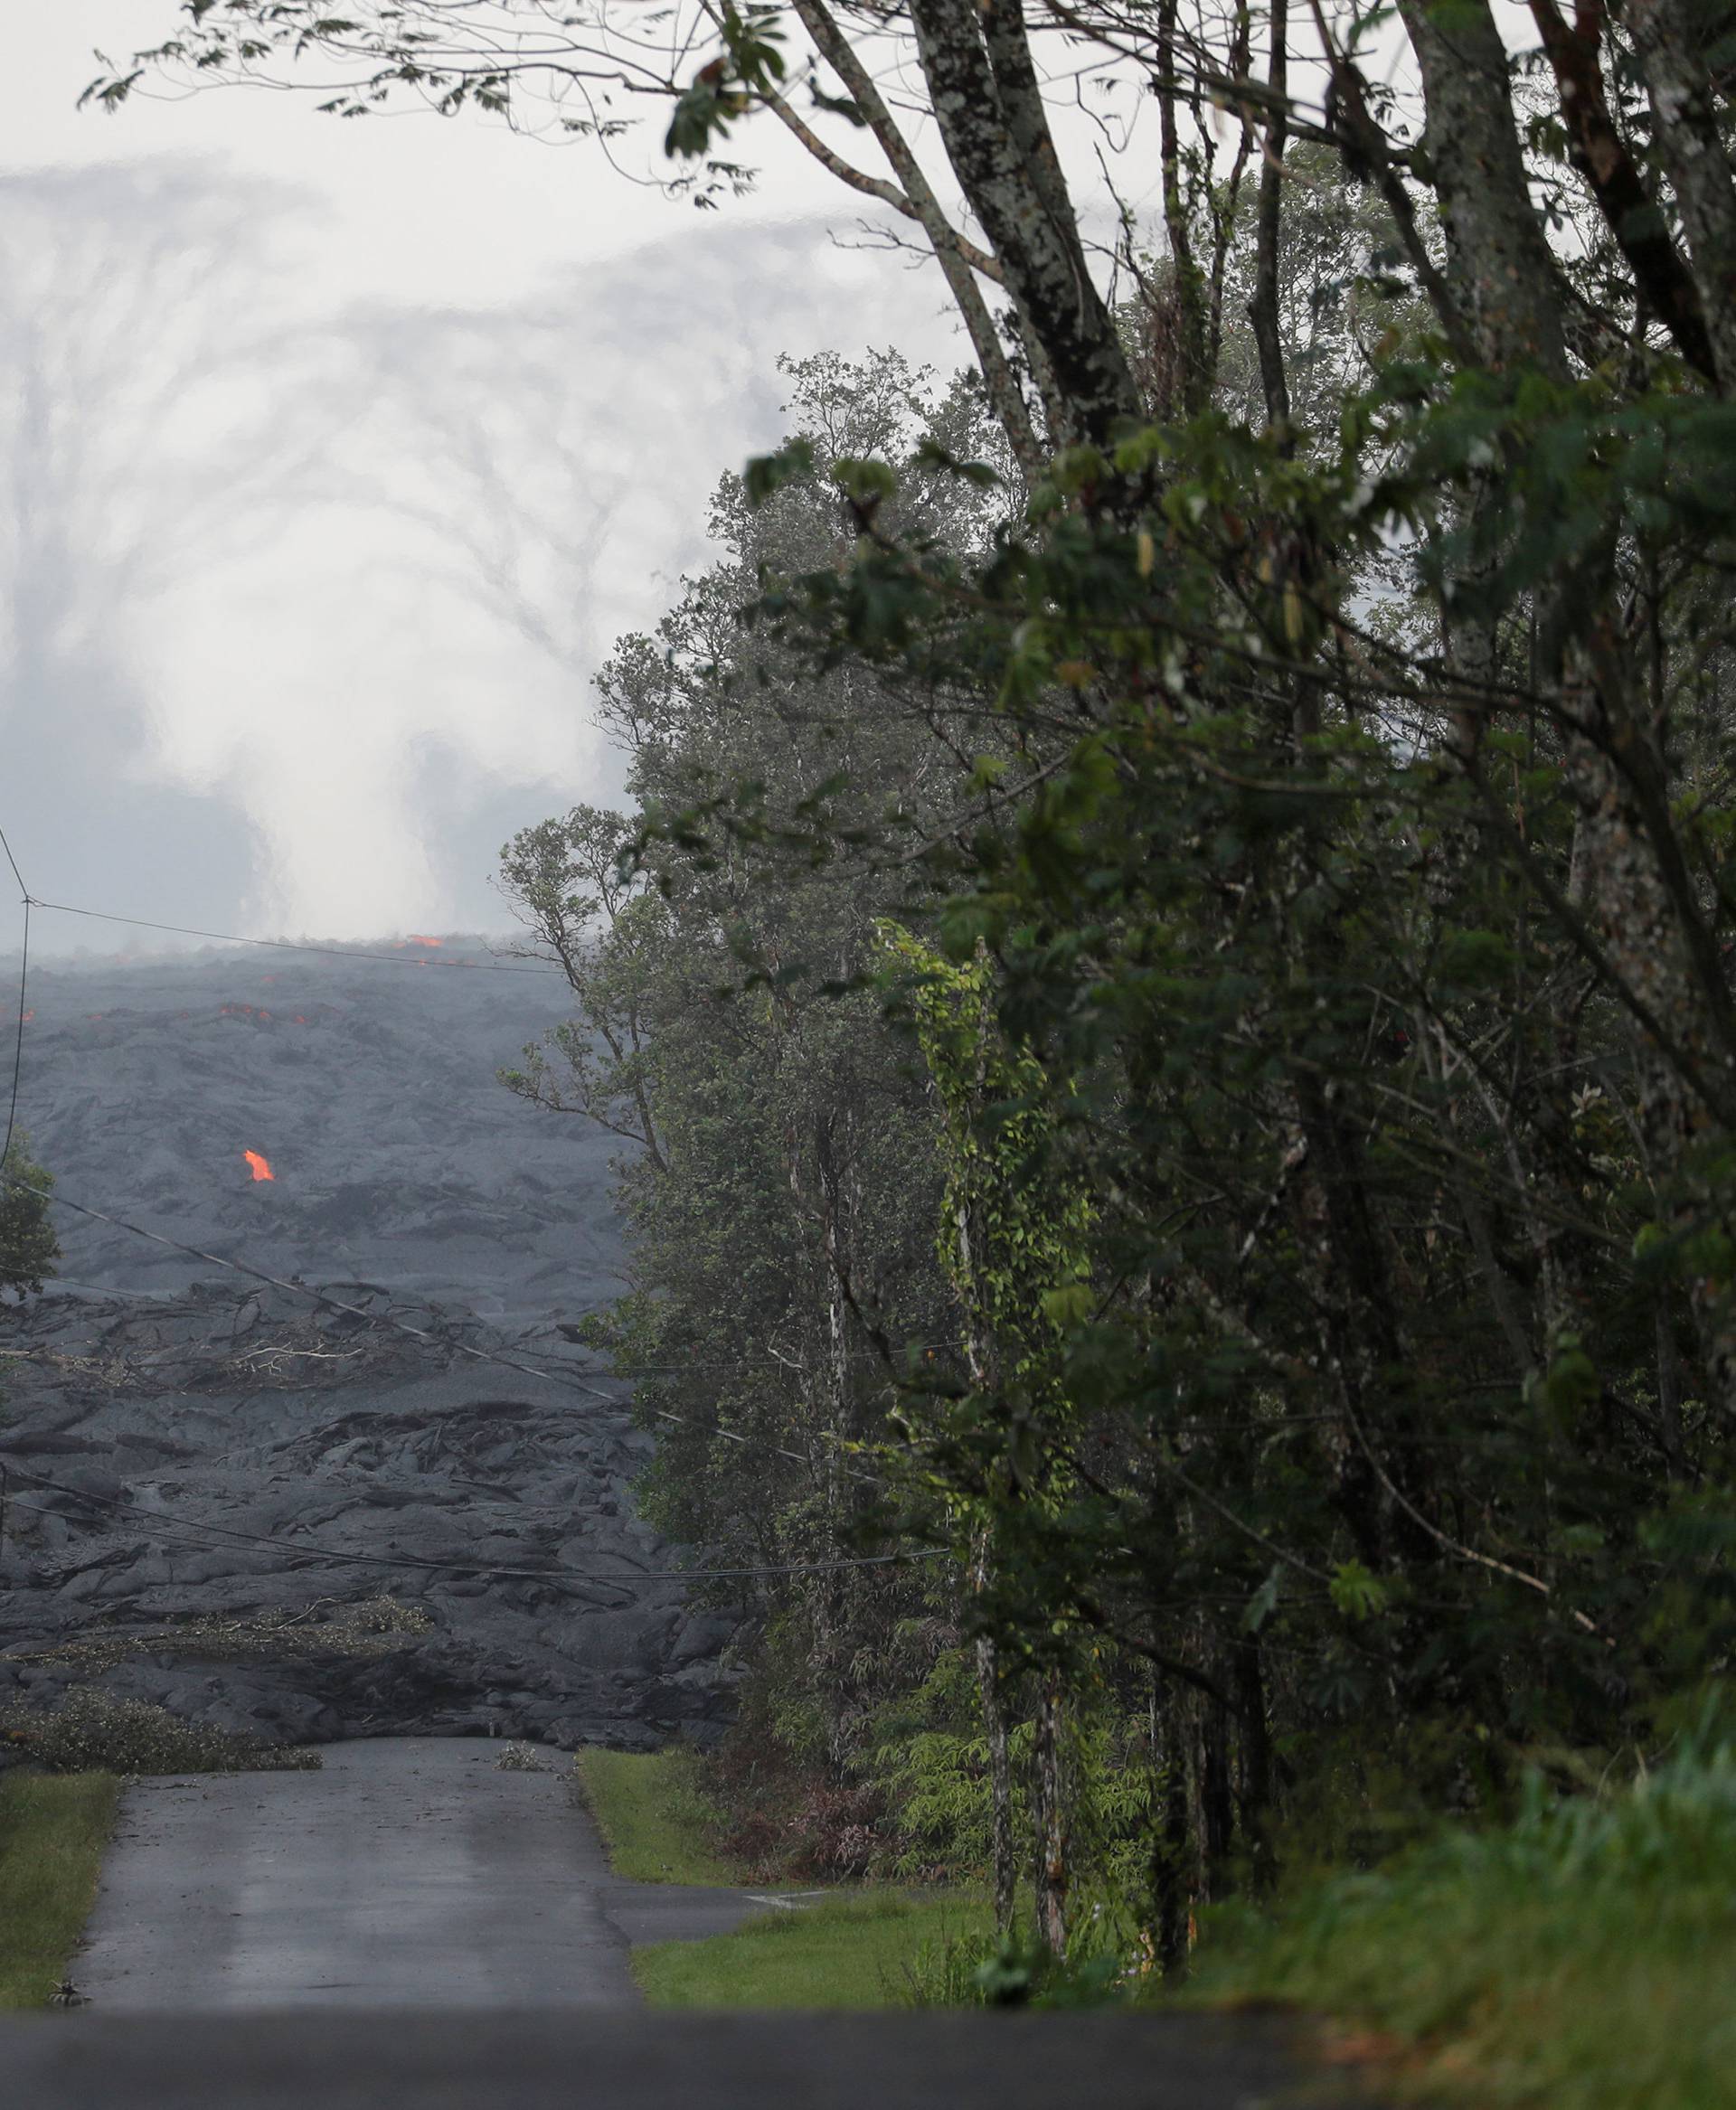 The Kilauea lava flow cuts off Kahukai Street, in the Leilani Estates near Pahoa, Hawaii